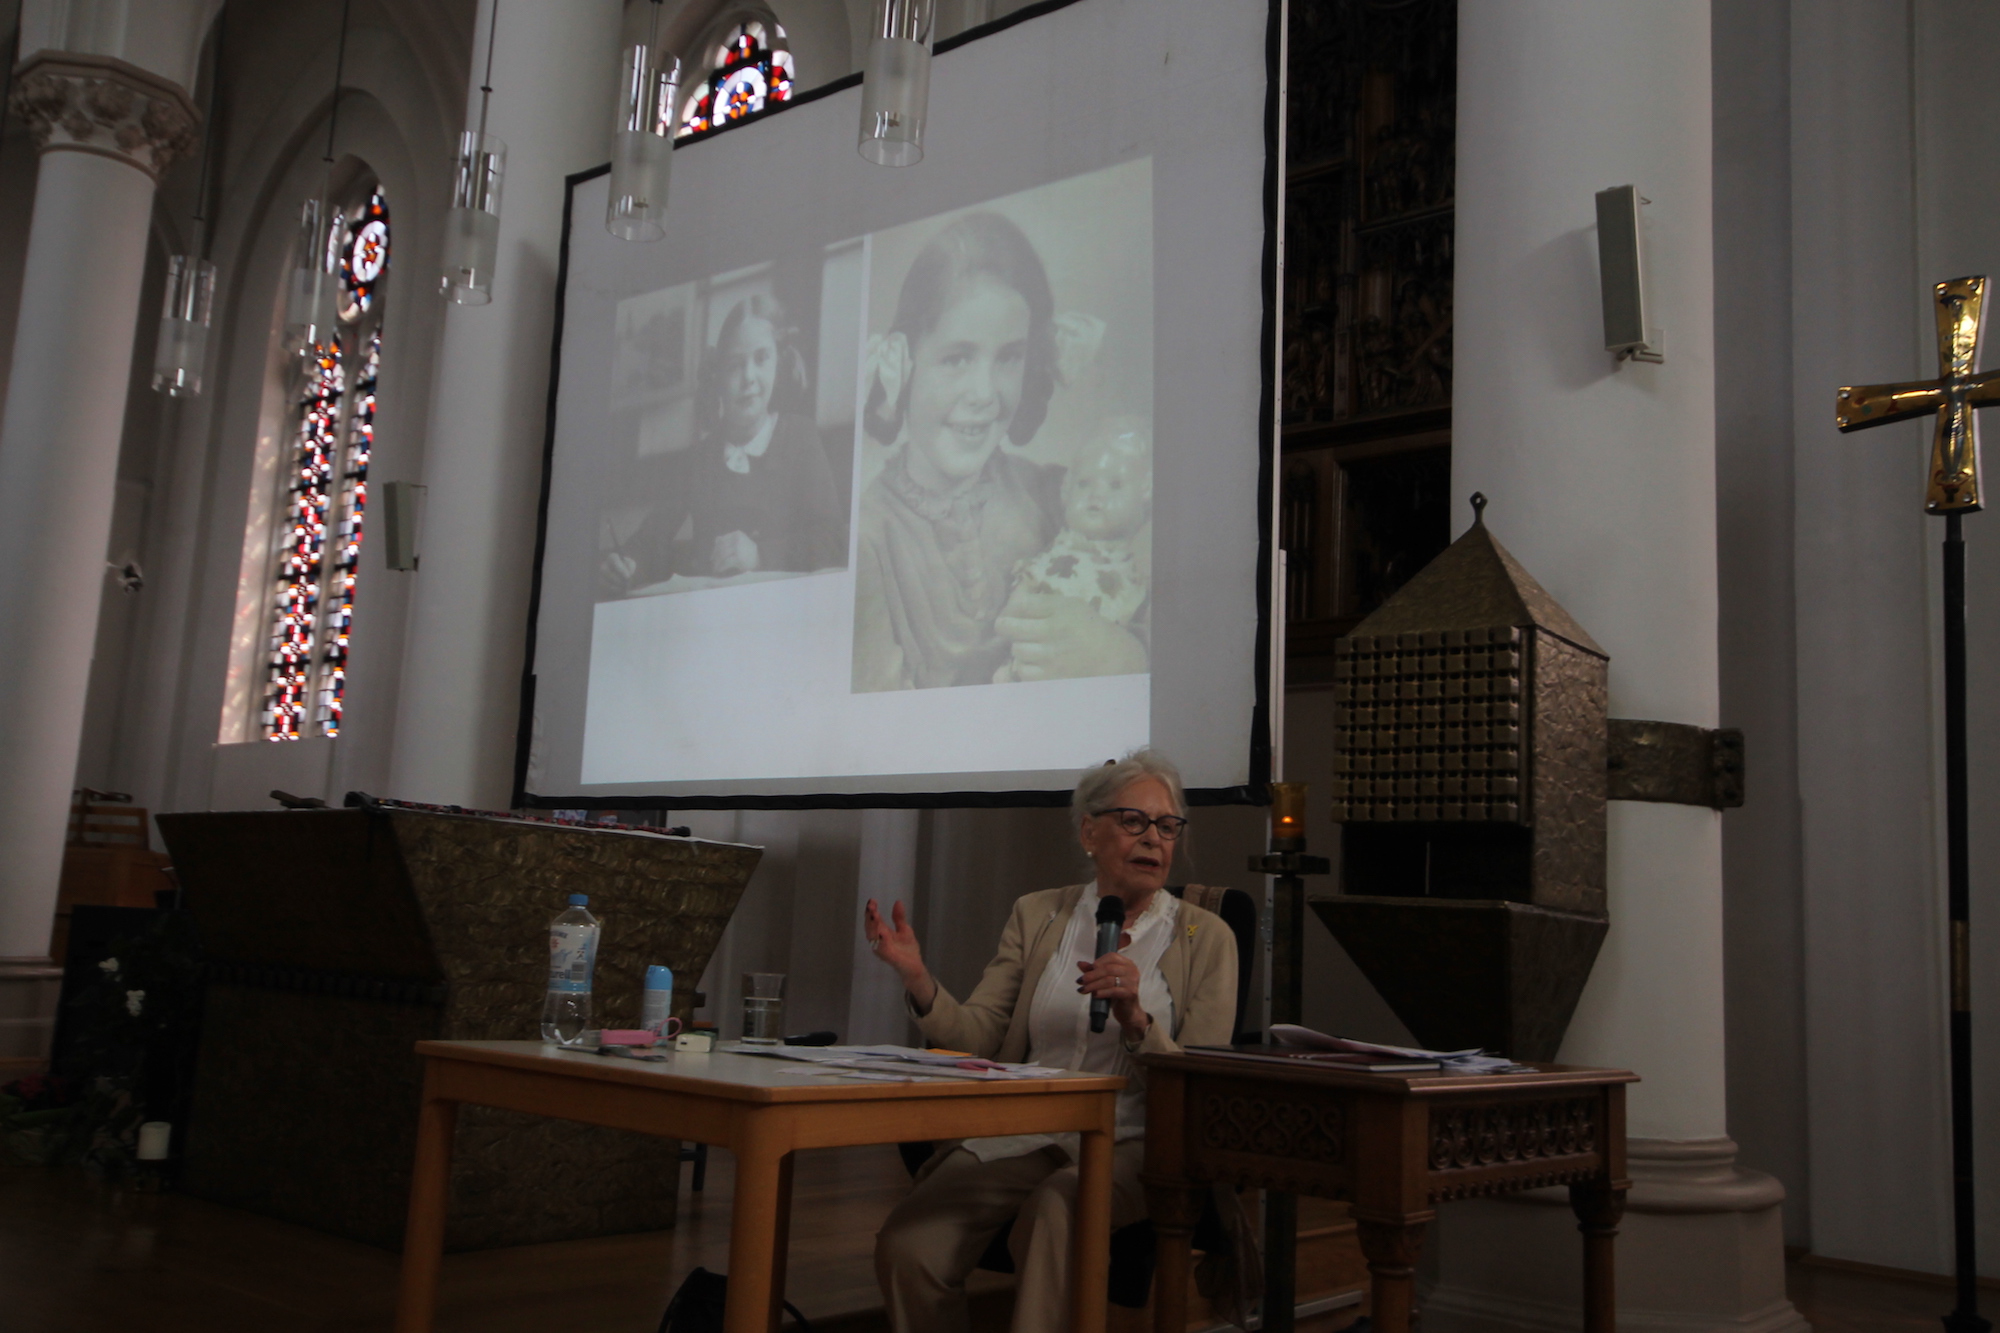 Eva Weyl ist 89 Jahre alt. Die Projektion im Hintergrund zeigt sie als Sechsjährige. (c) Kathrin Albrecht